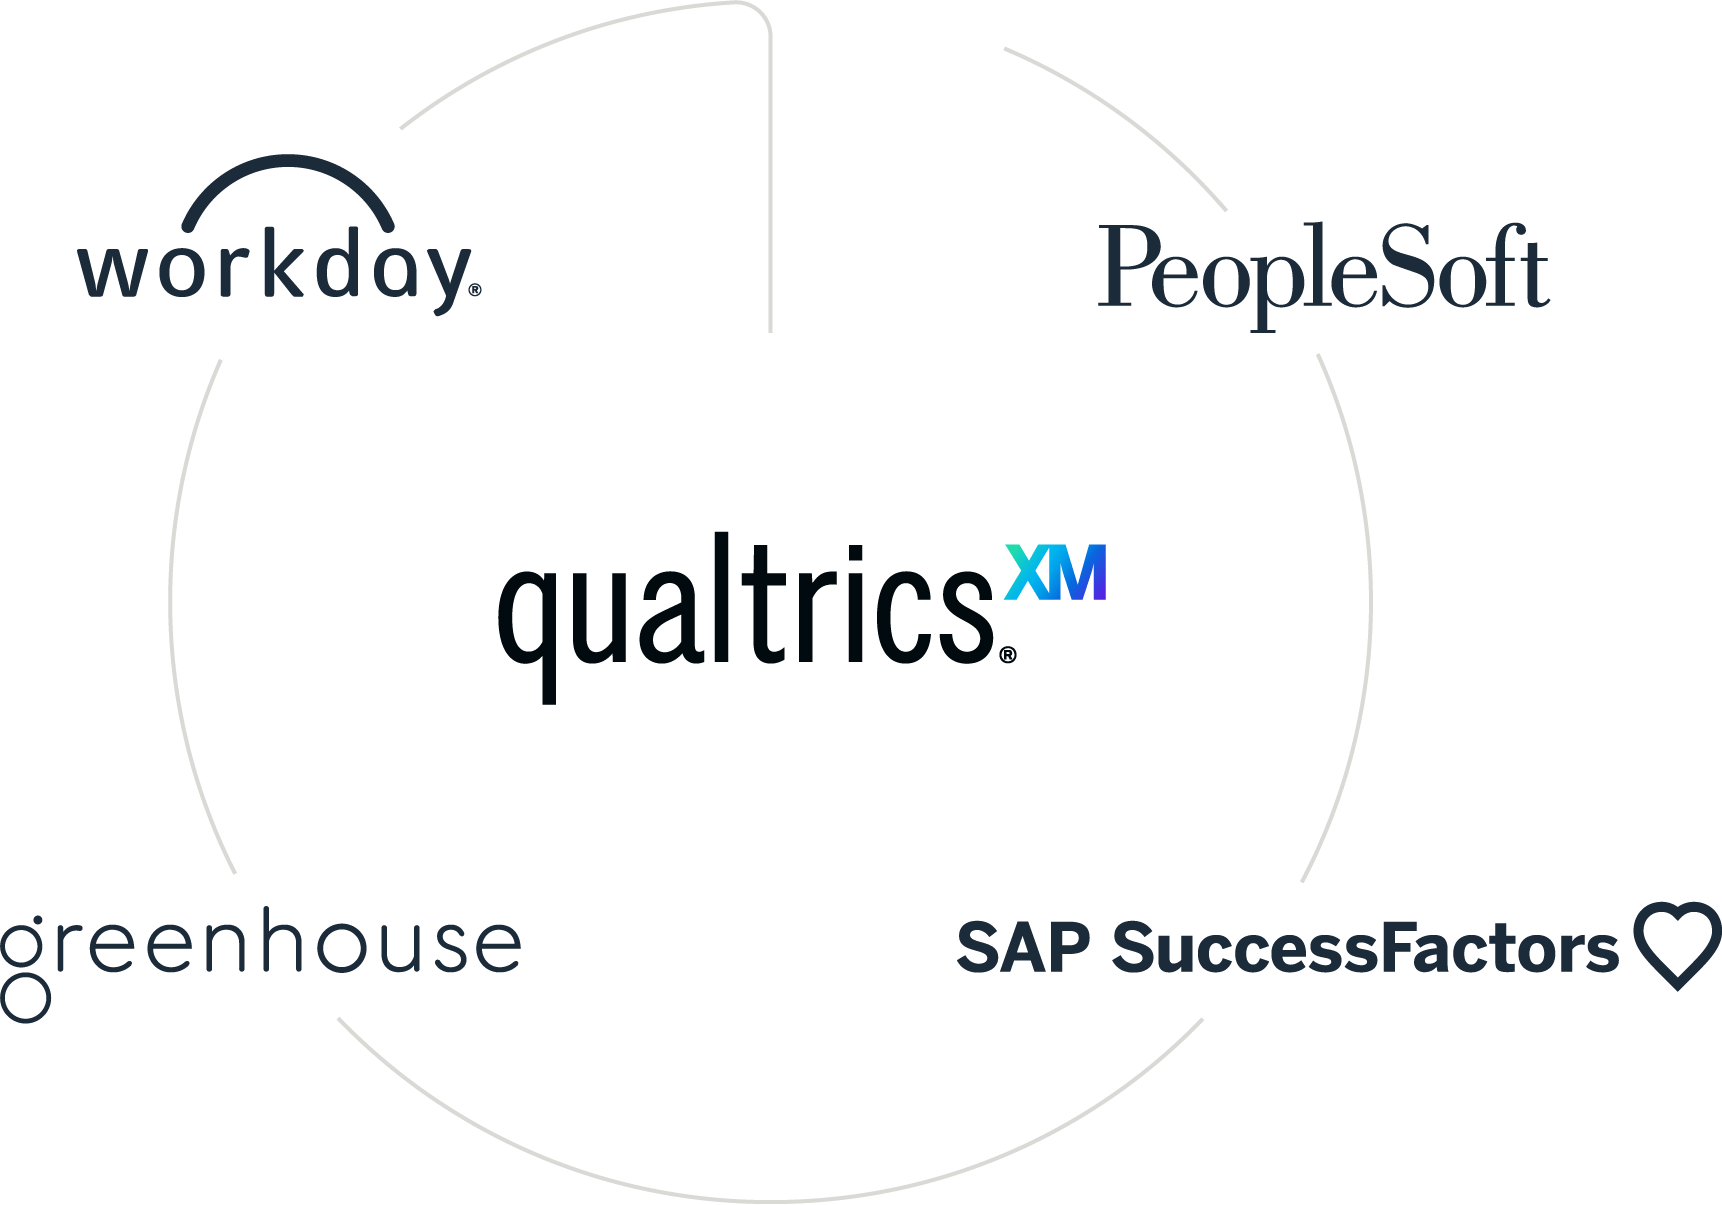 クアルトリクスと Workday、 Peoplesoft、SAP SuccessFactors、Greenhouseとその他との統合のイメージ